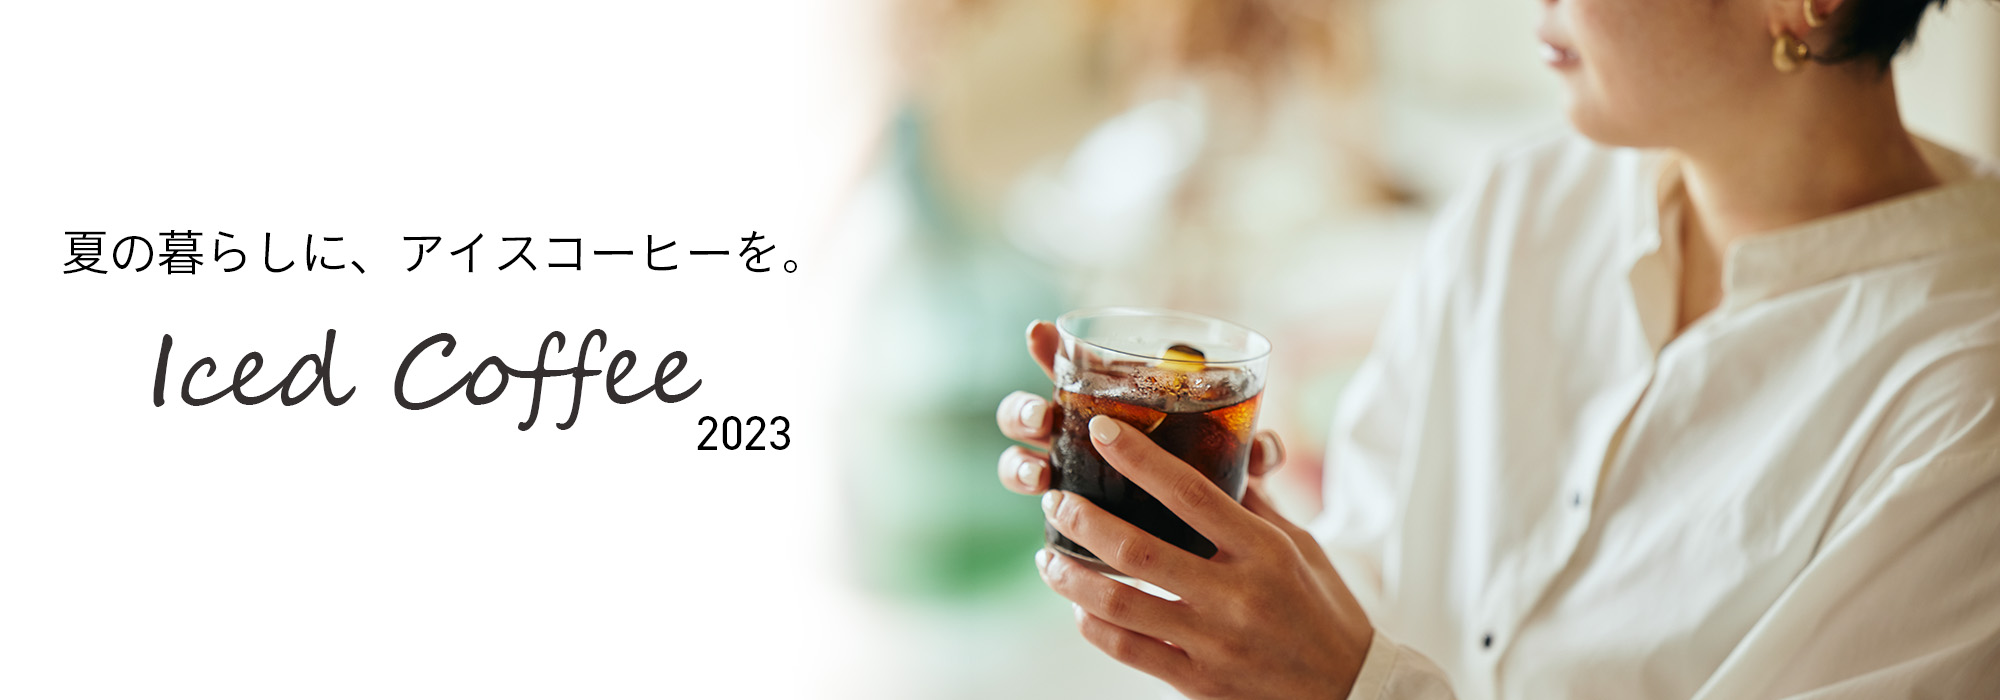 2023年アイスコーヒー特集